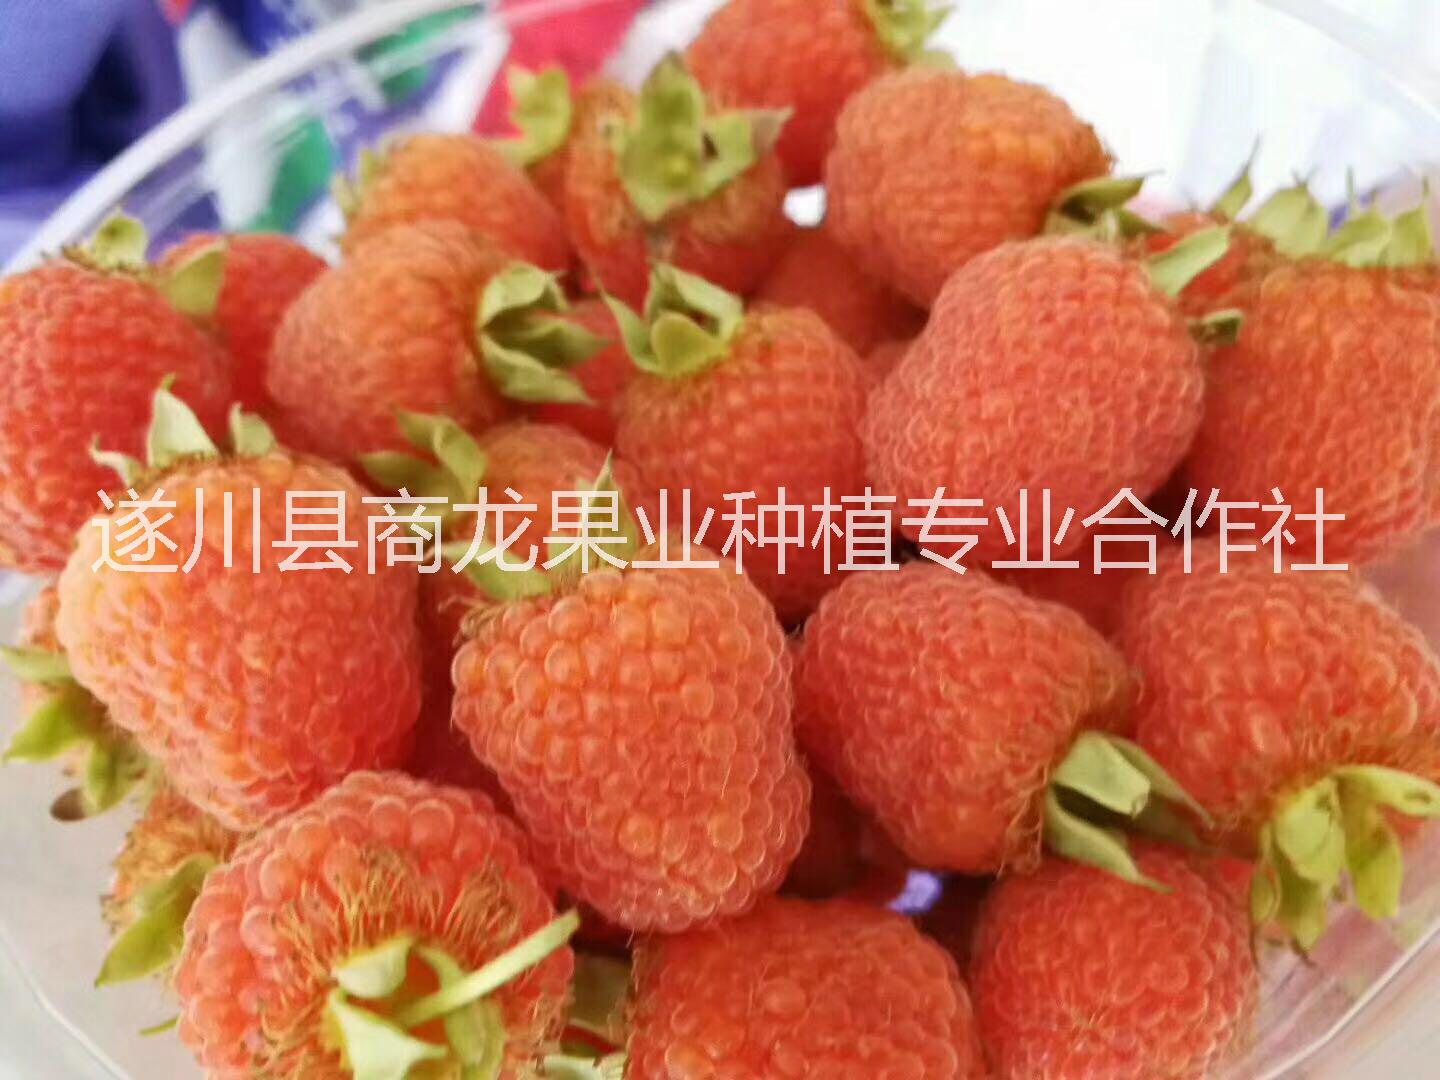 遂川县商龙果业种植专业合作社